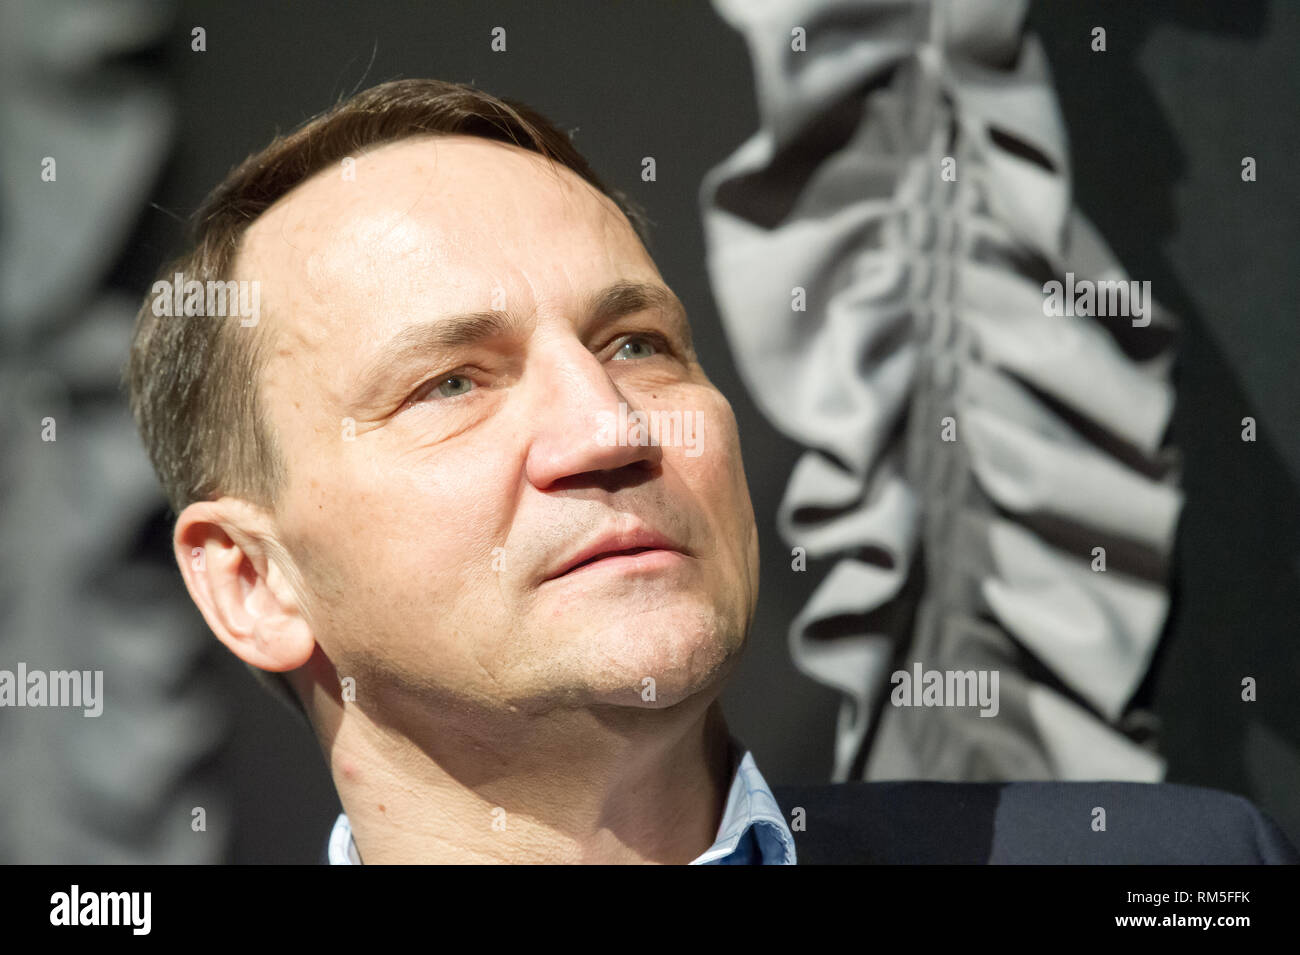 Radoslaw Sikorski in Gdynia, Poland. February 10th 2019  © Wojciech Strozyk / Alamy Stock Photo Stock Photo